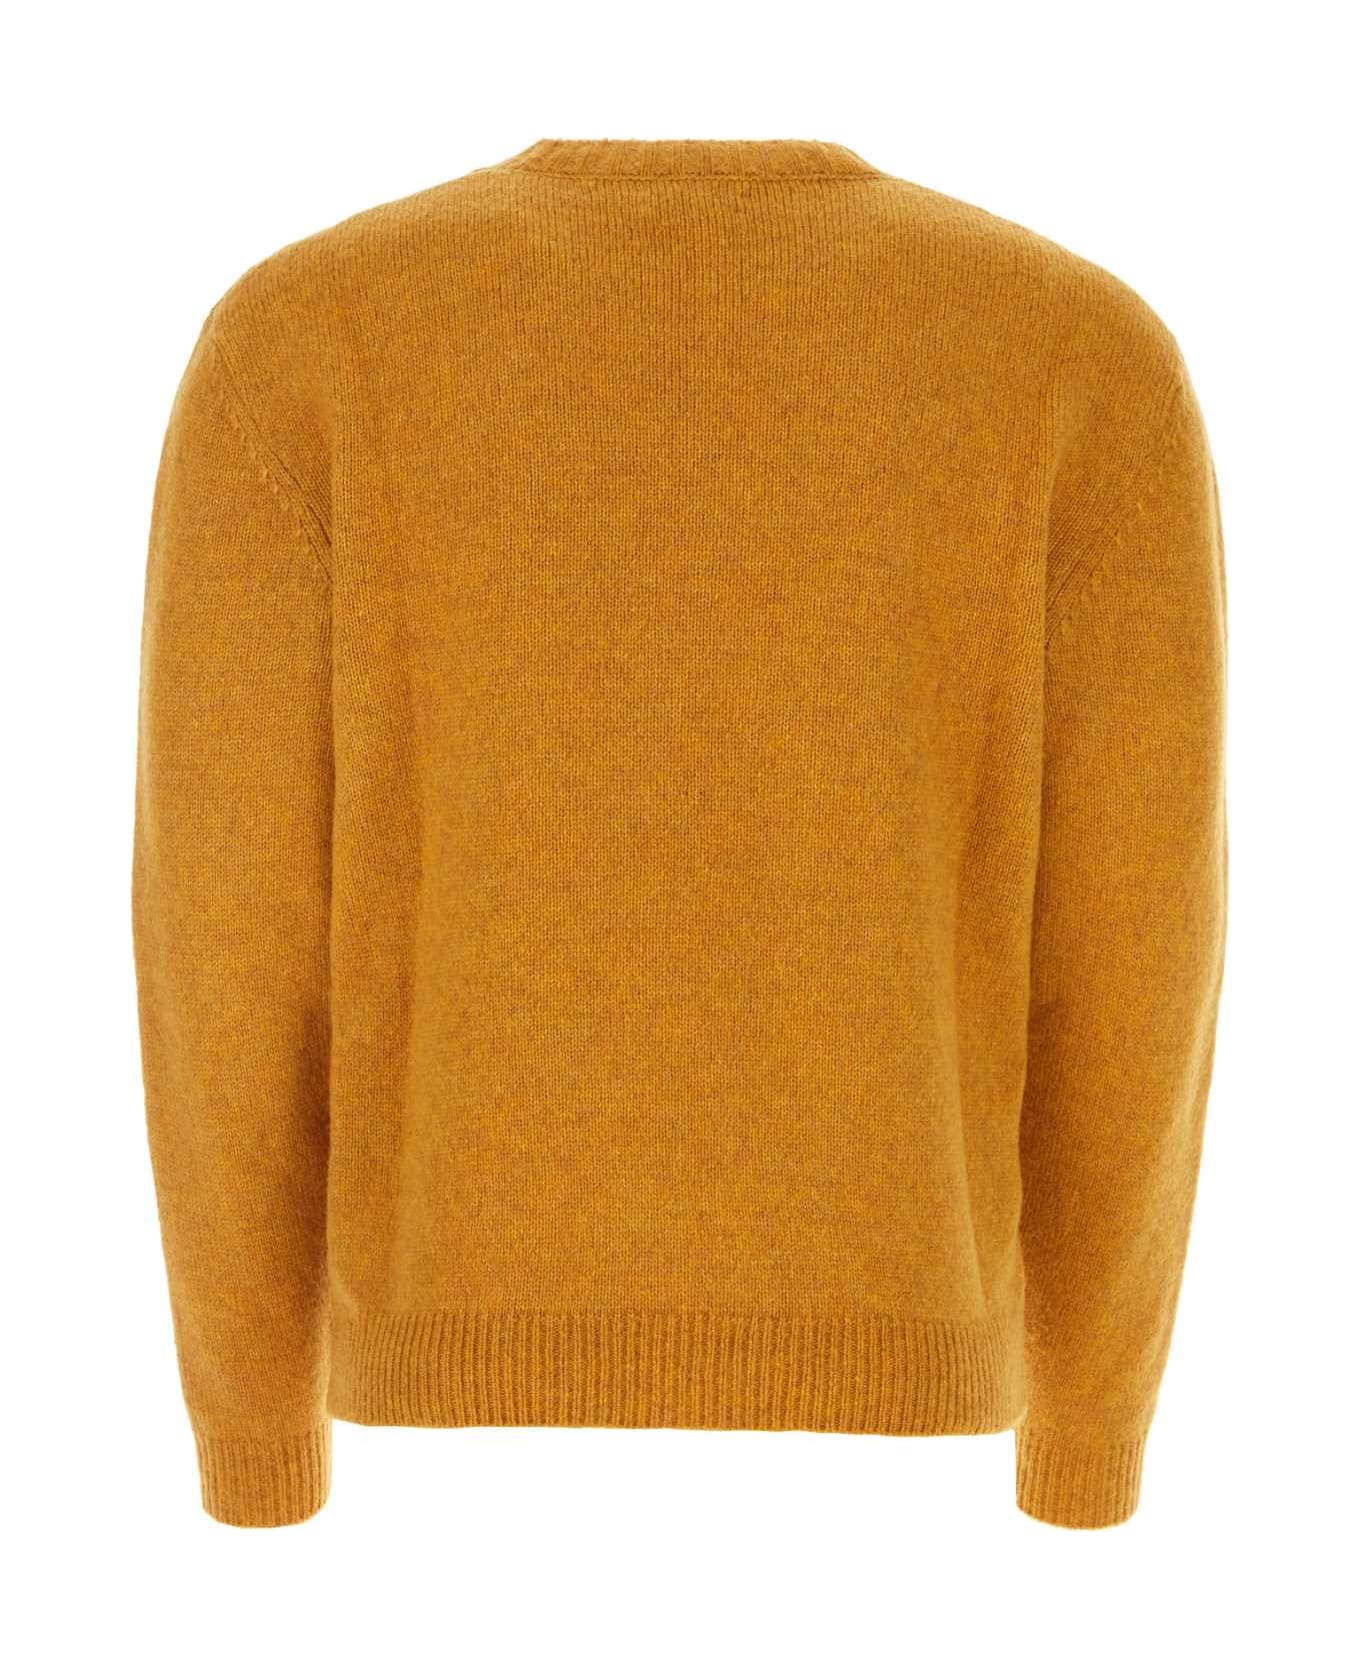 Baracuta Ochre Virgin Wool Blend Sweater - OCHRE